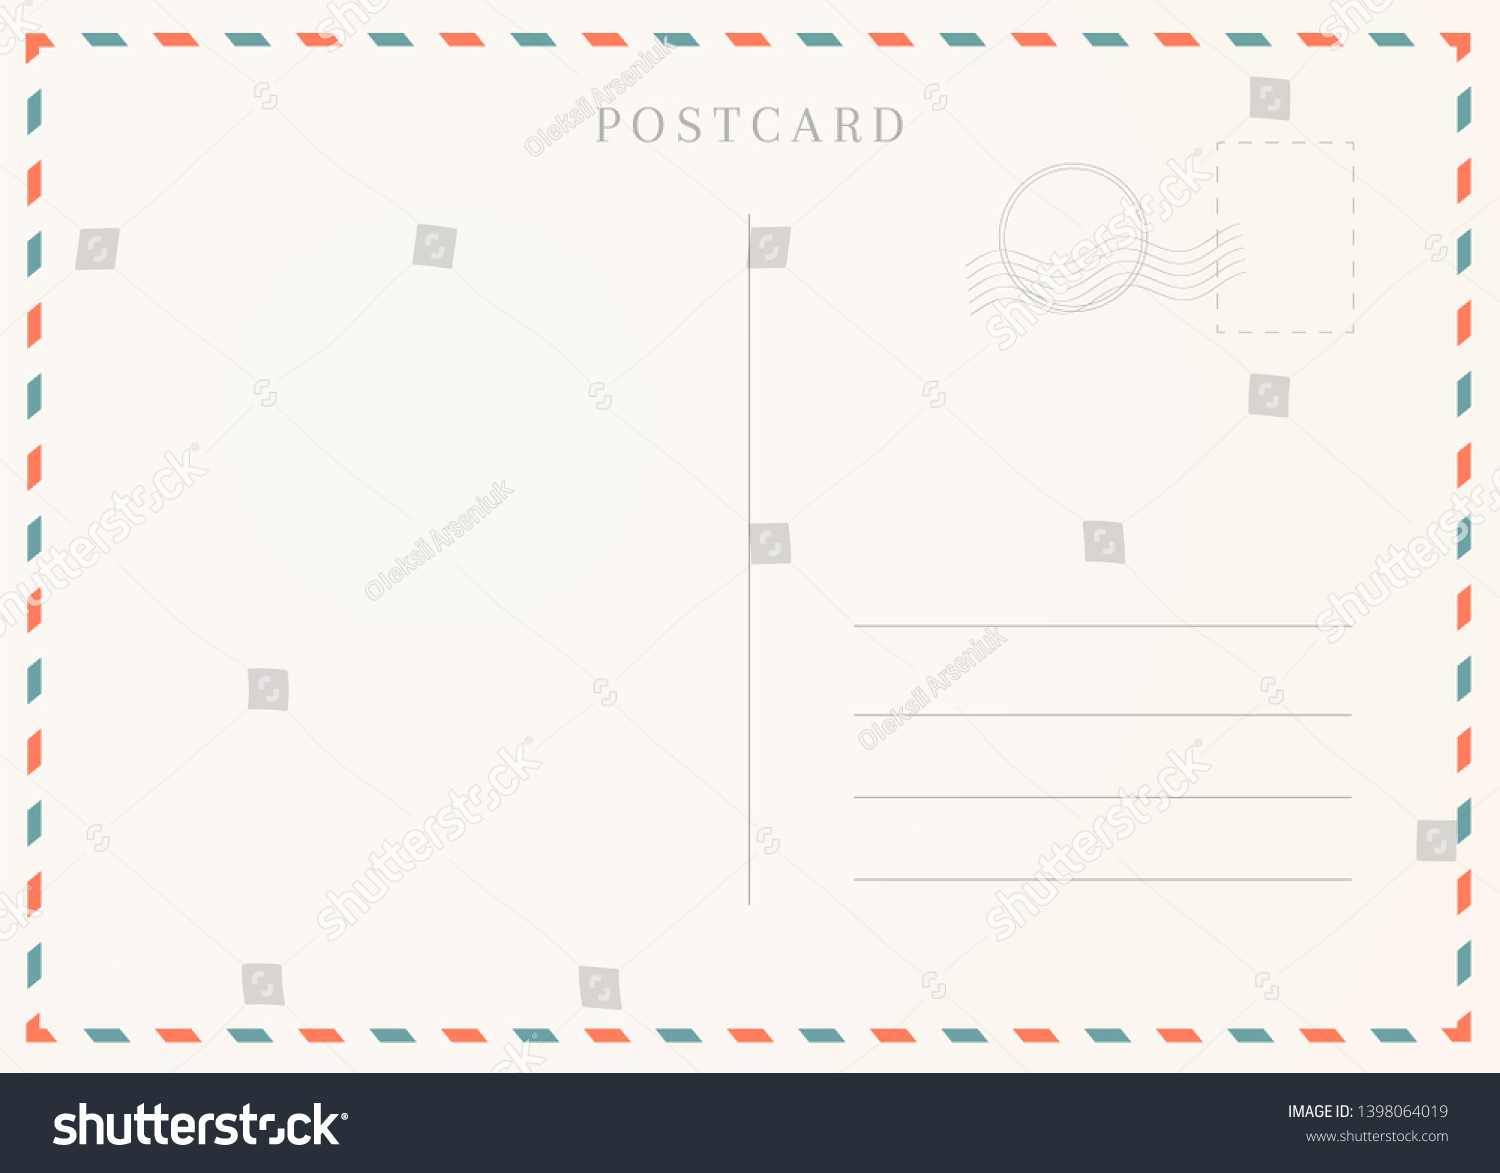 Vintage postcard template. Postal card illustration for design #1398064019